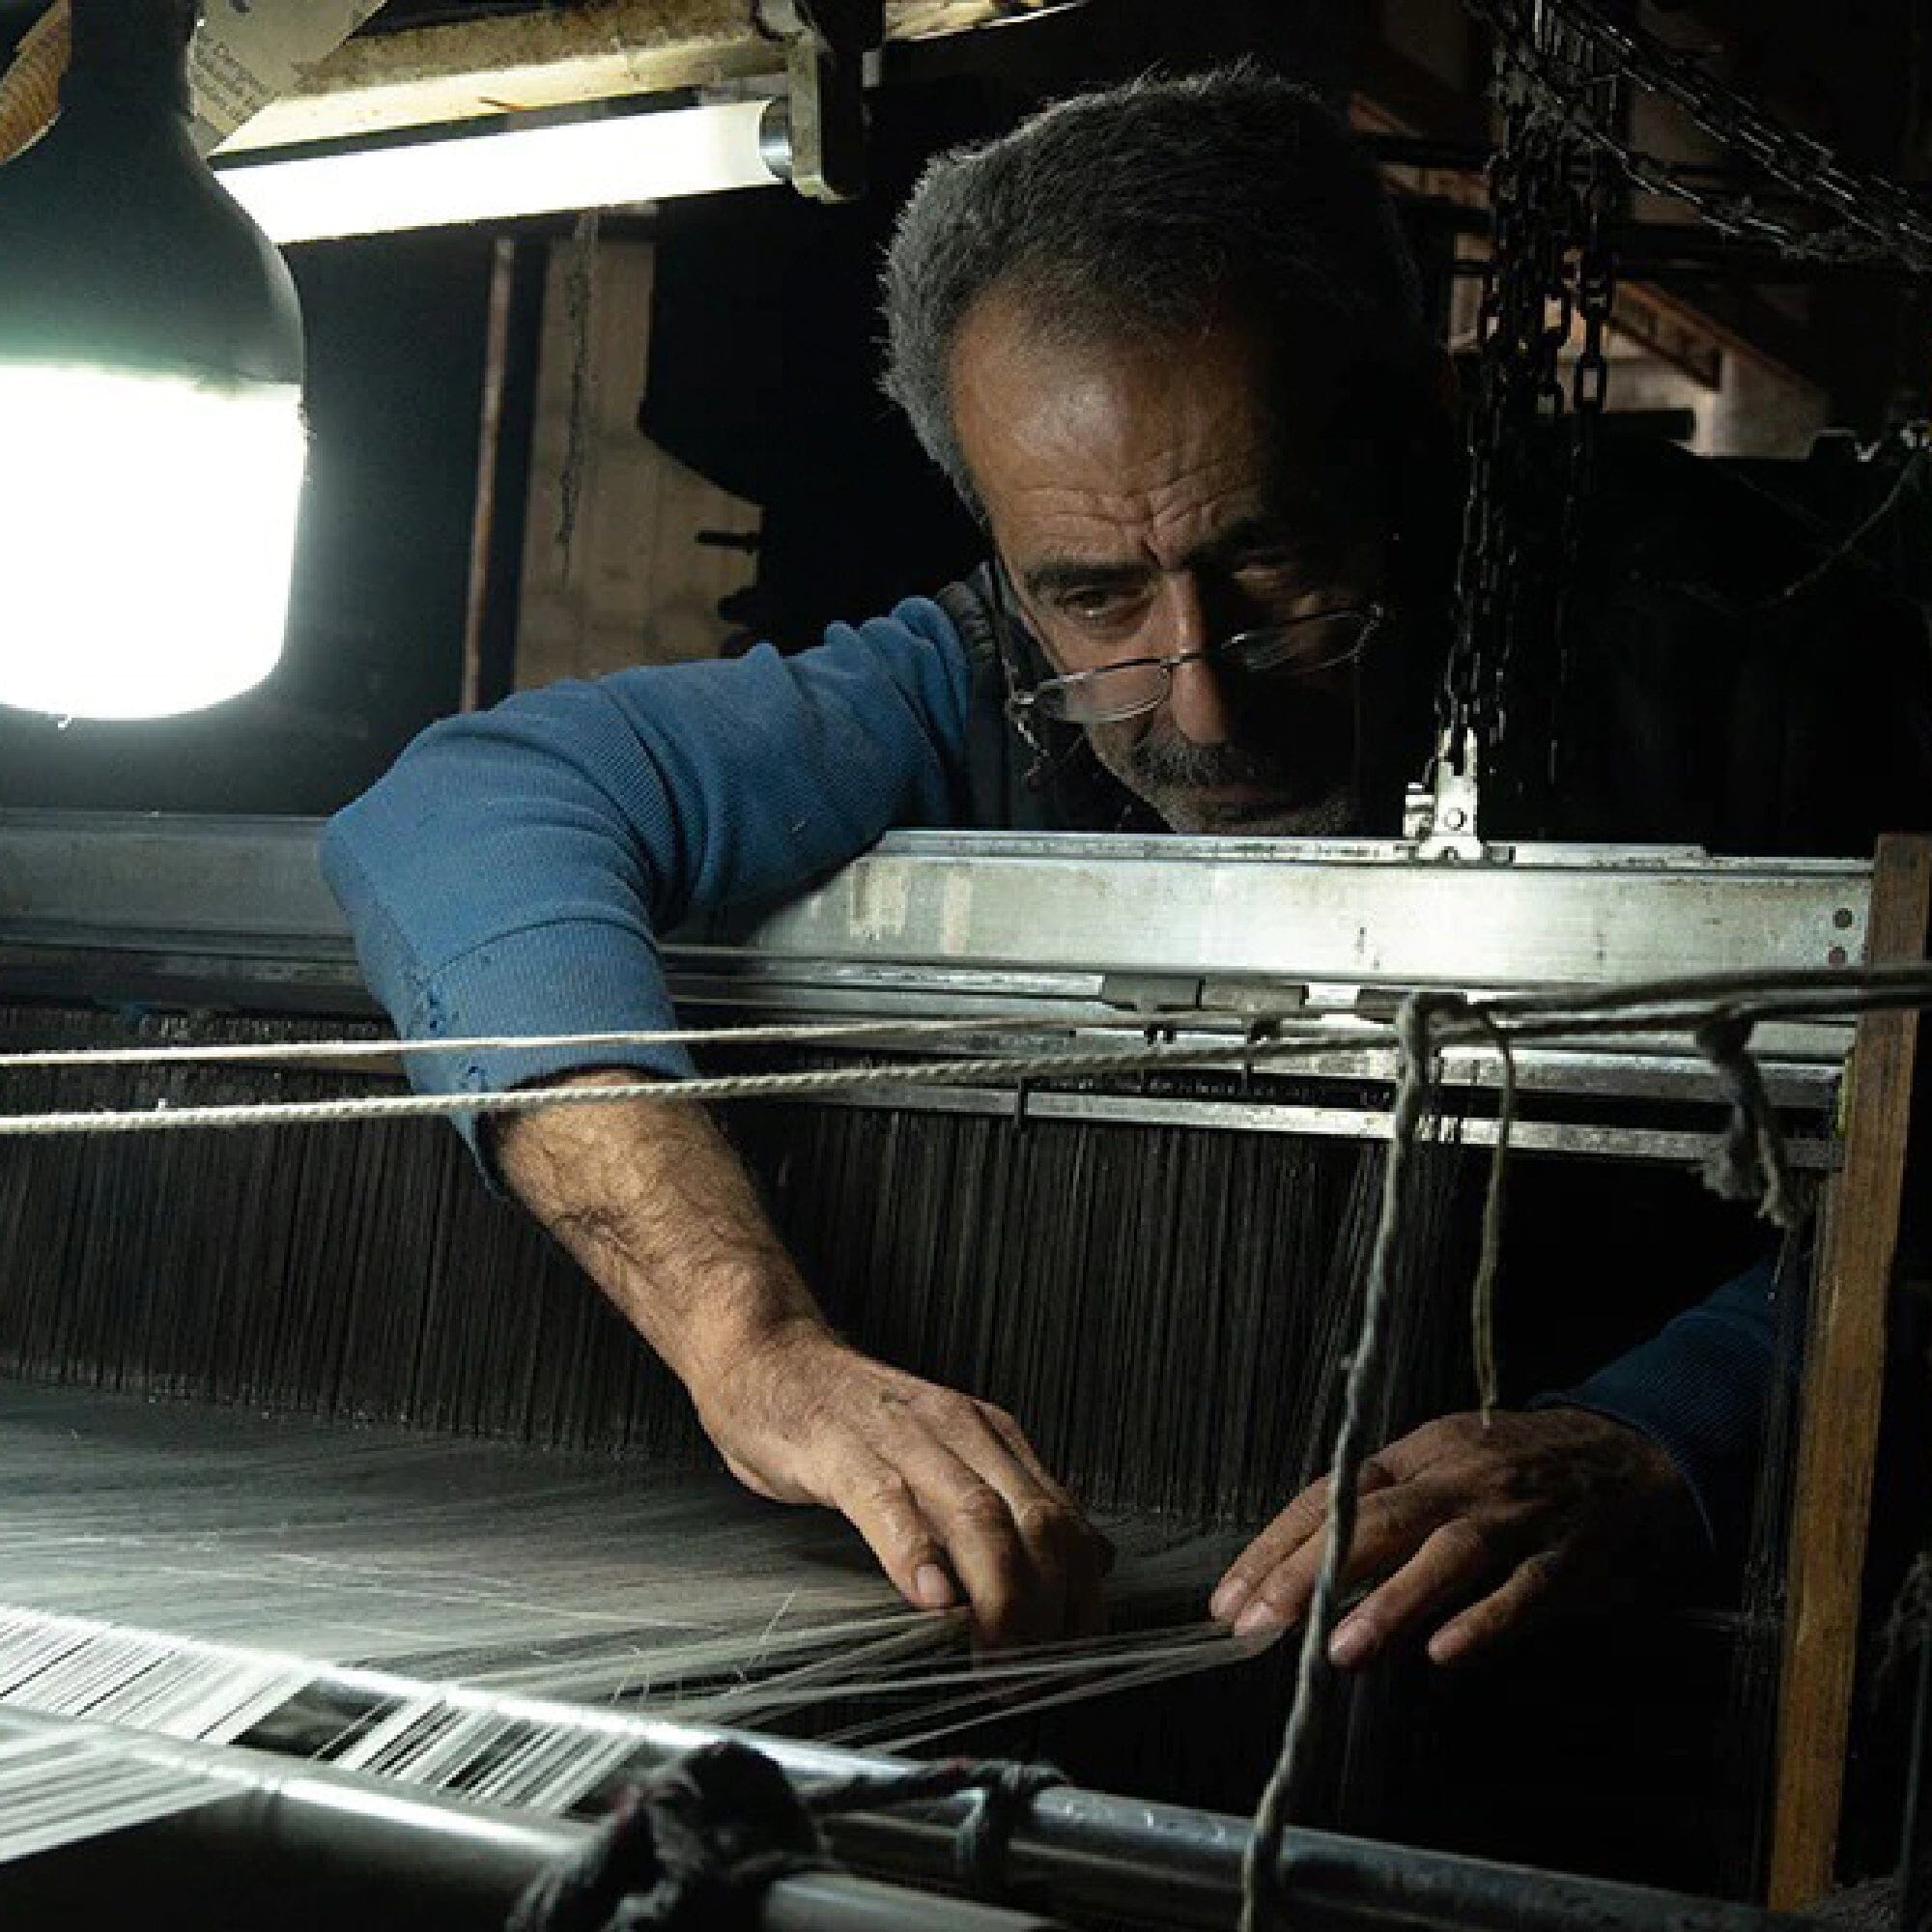 Turkish Silk Scarf | Grey Home Textiles 